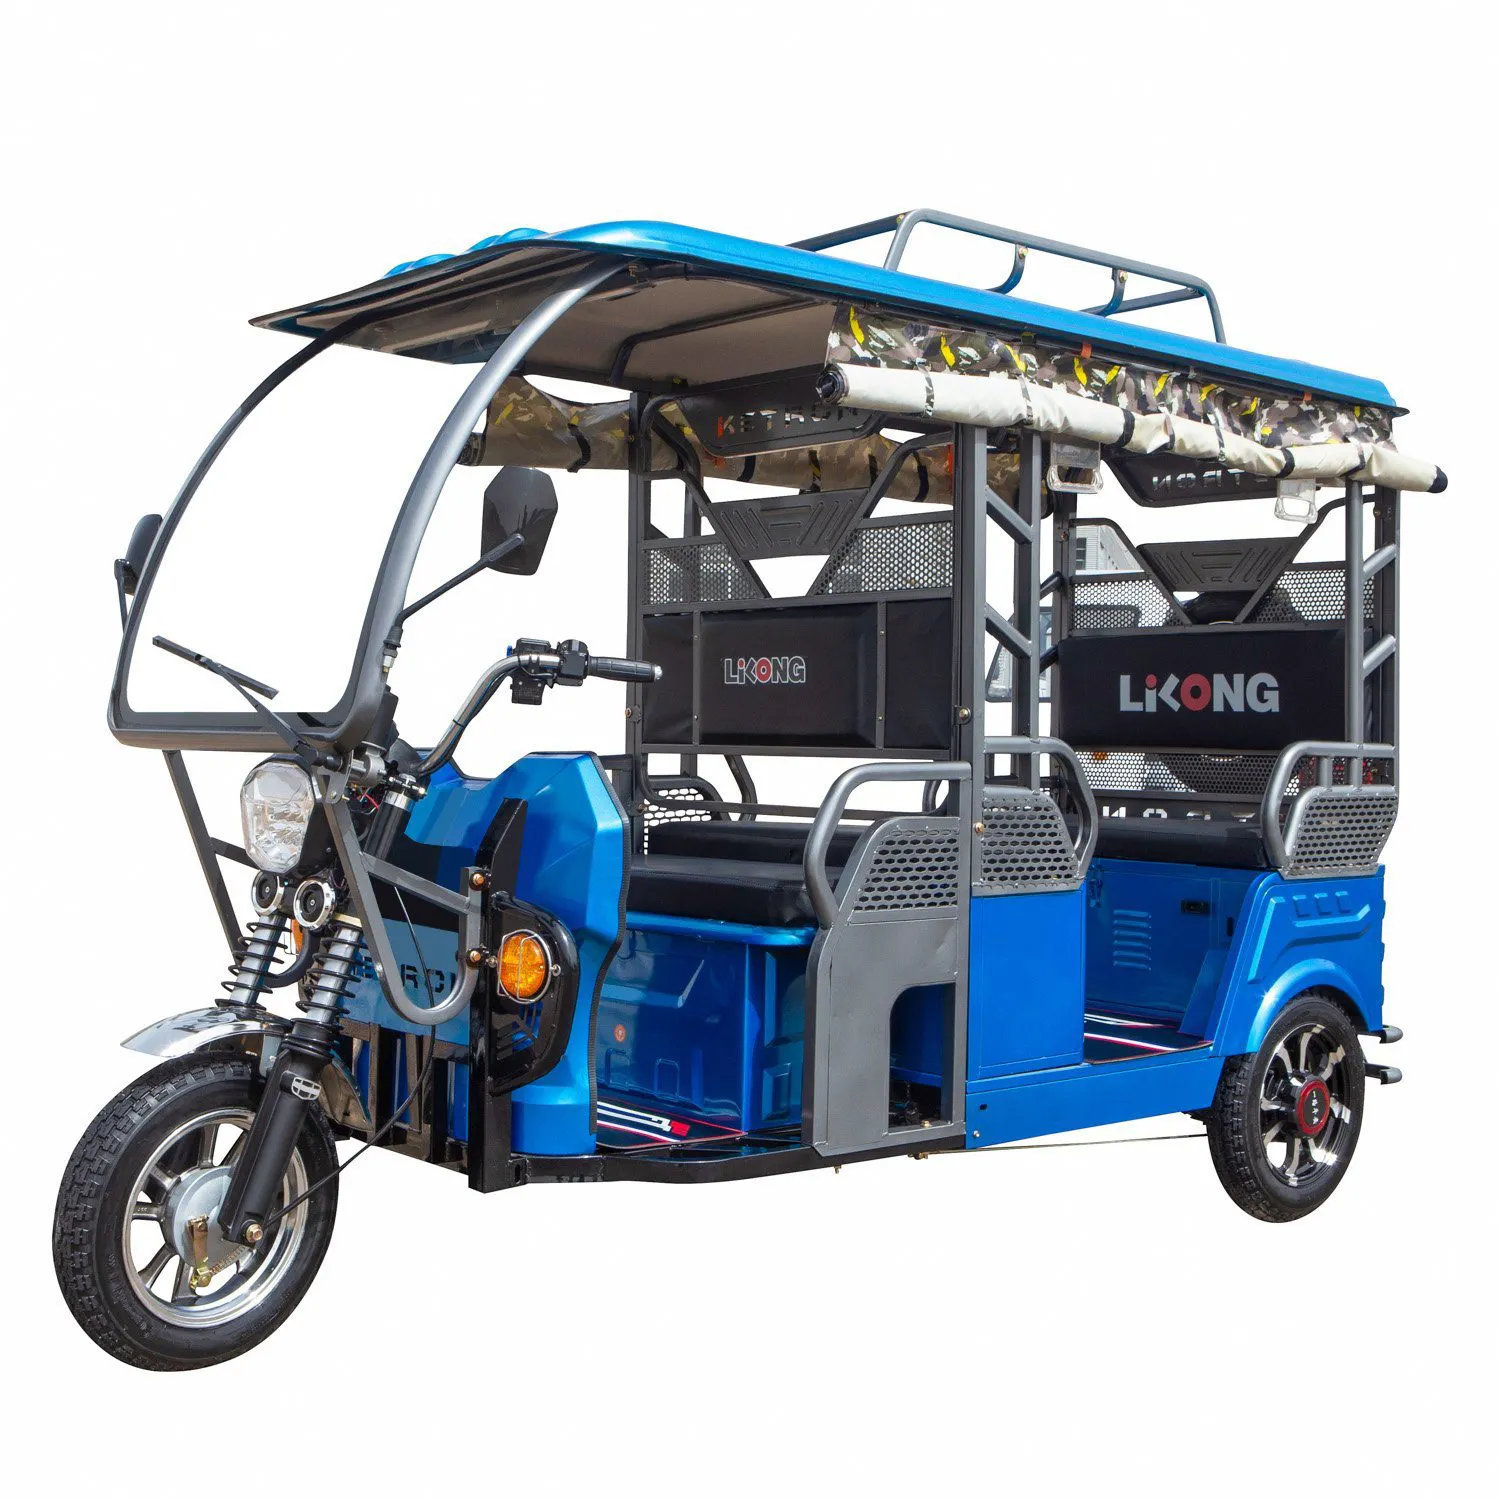 Пассажир 4-5 Электрический рикша Индия Bajaj авто Электрический пассажирский трехколесный велосипед